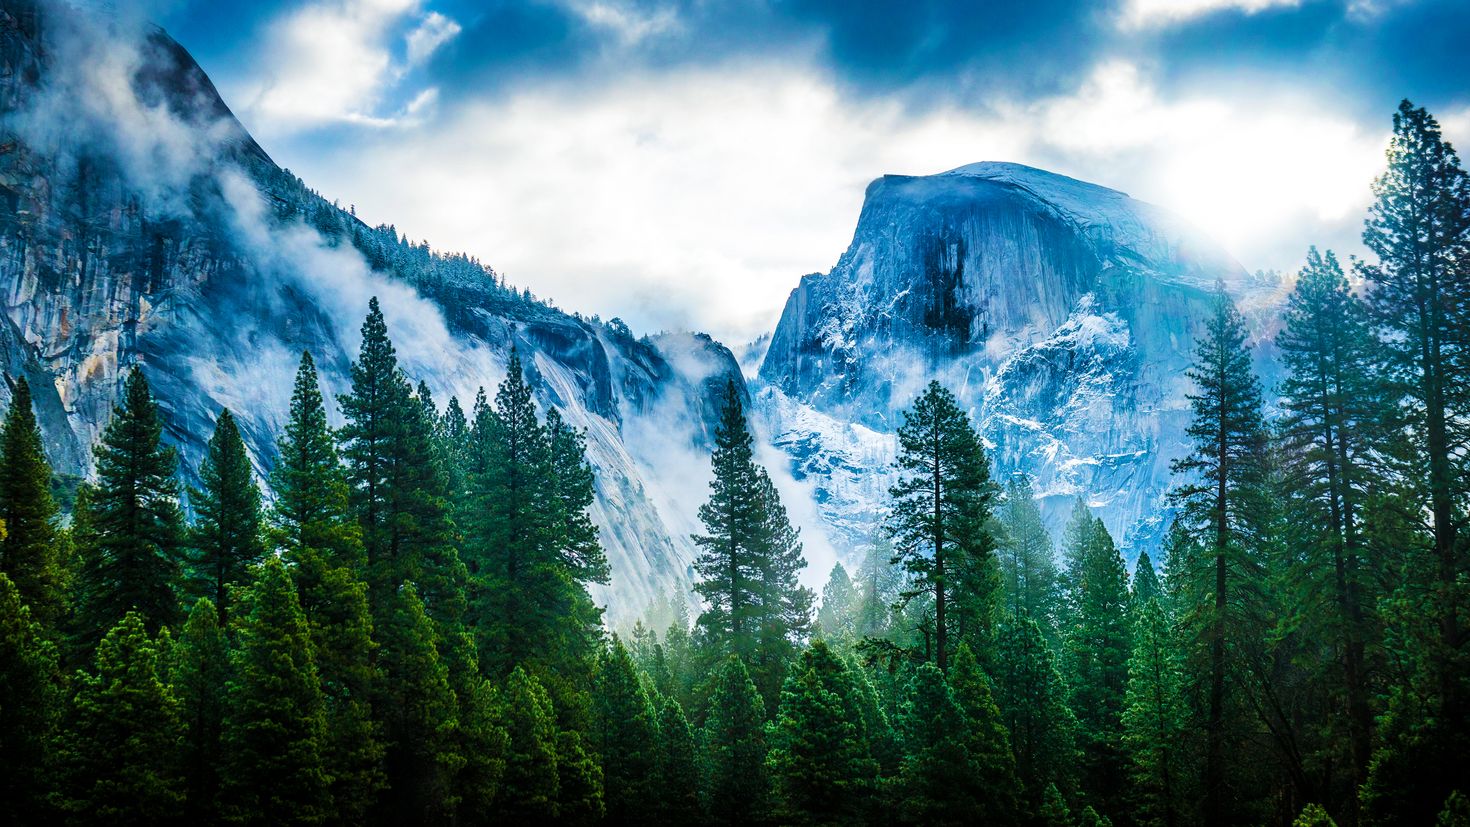 Лес горы слились все. Горы Сьерра Невада Макос. Йосемити хвойный лес. Мак ОС Йосемити. Йосемитский национальный парк.